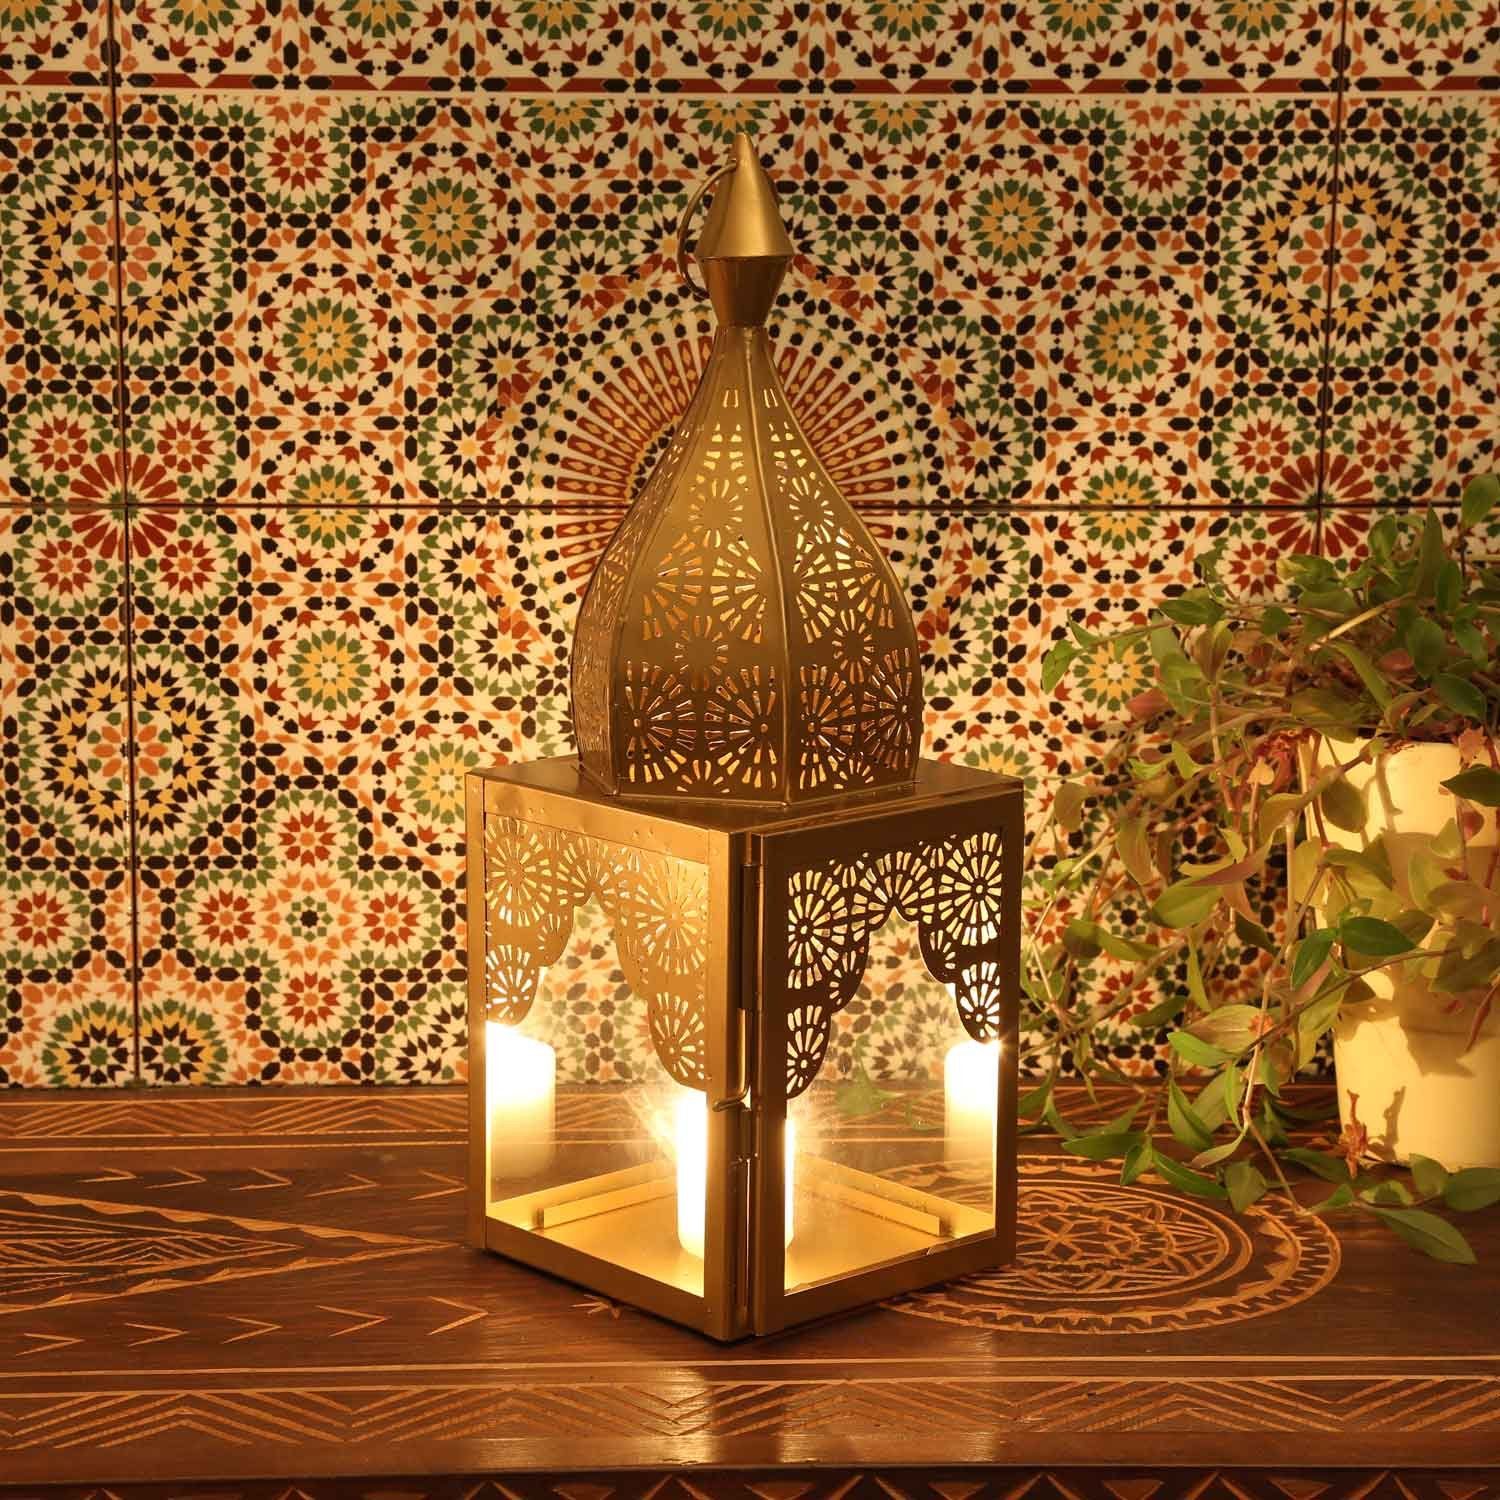 Casa Moro Windlicht Orientalisches Windlicht Modena Gold M aus Glas & Metall Höhe 45cm in Minaretten Form, Marokkanische Laterne Kerzenhalter, Wohn-Deko Weihnachten, IRL650, Kunsthandwerk